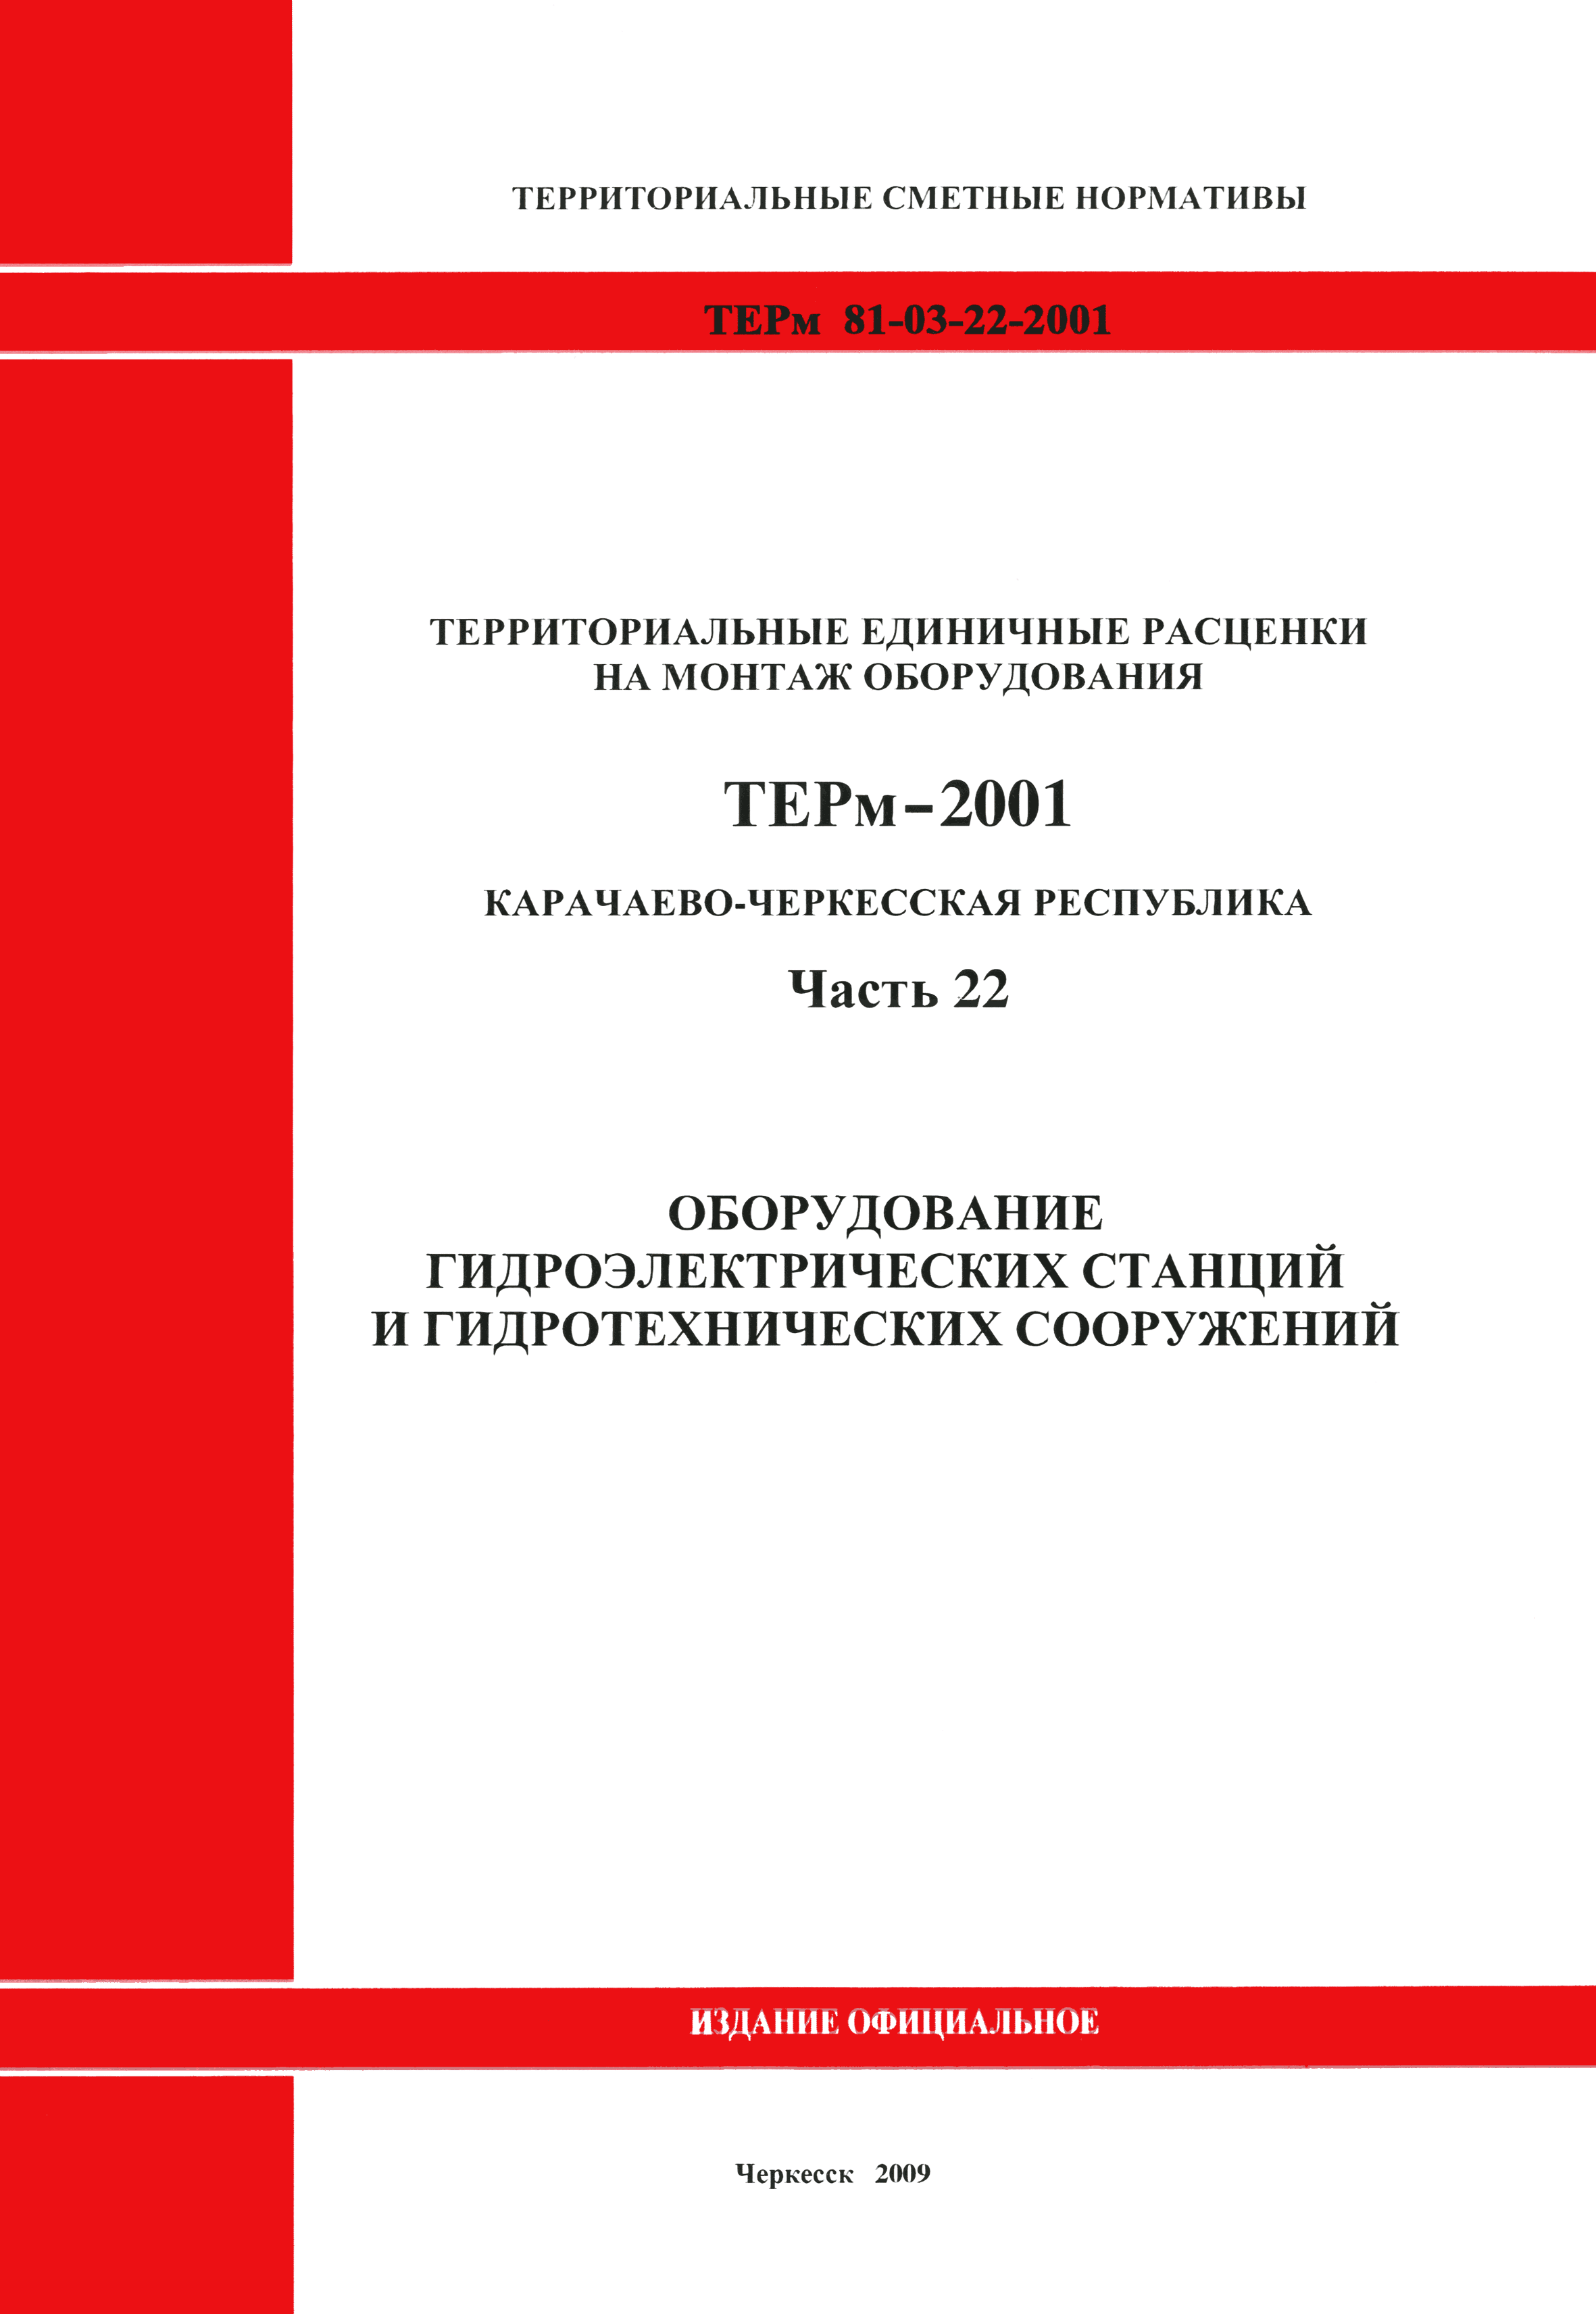 ТЕРм Карачаево-Черкесская Республика 22-2001